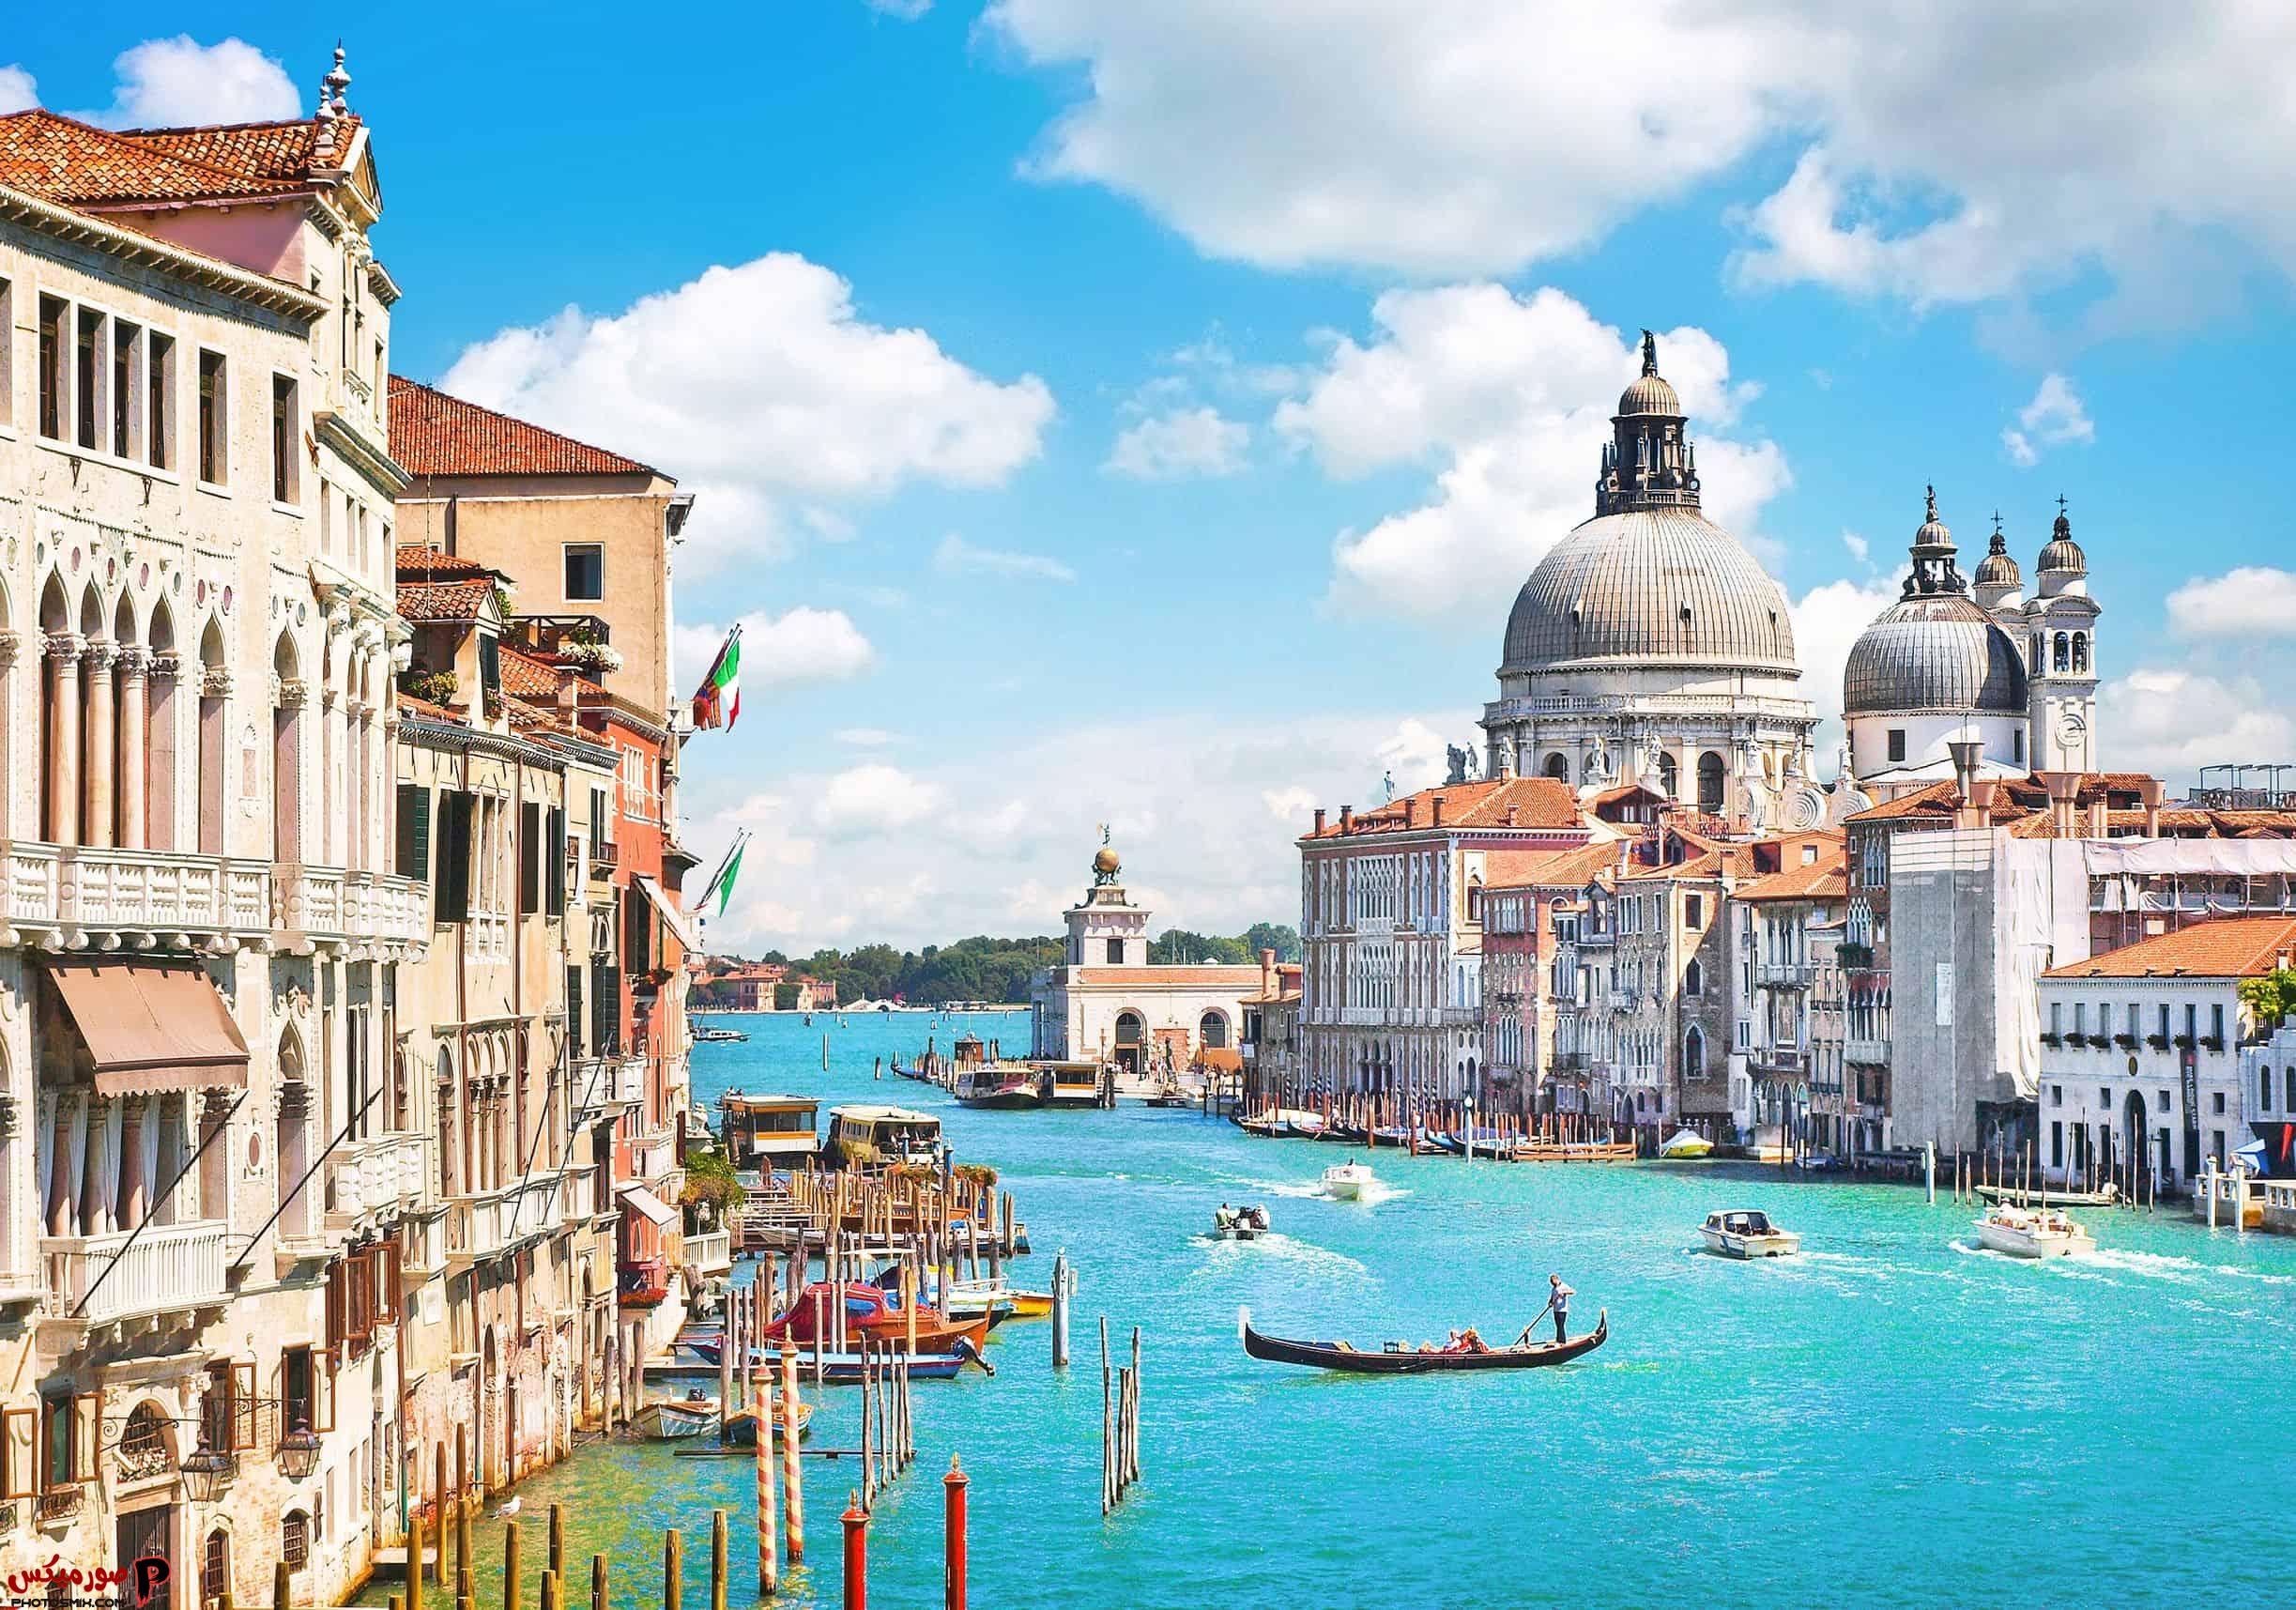 صور مدن إيطالية ساحرة ومعلومات عامة عن دولة إيطاليا 5